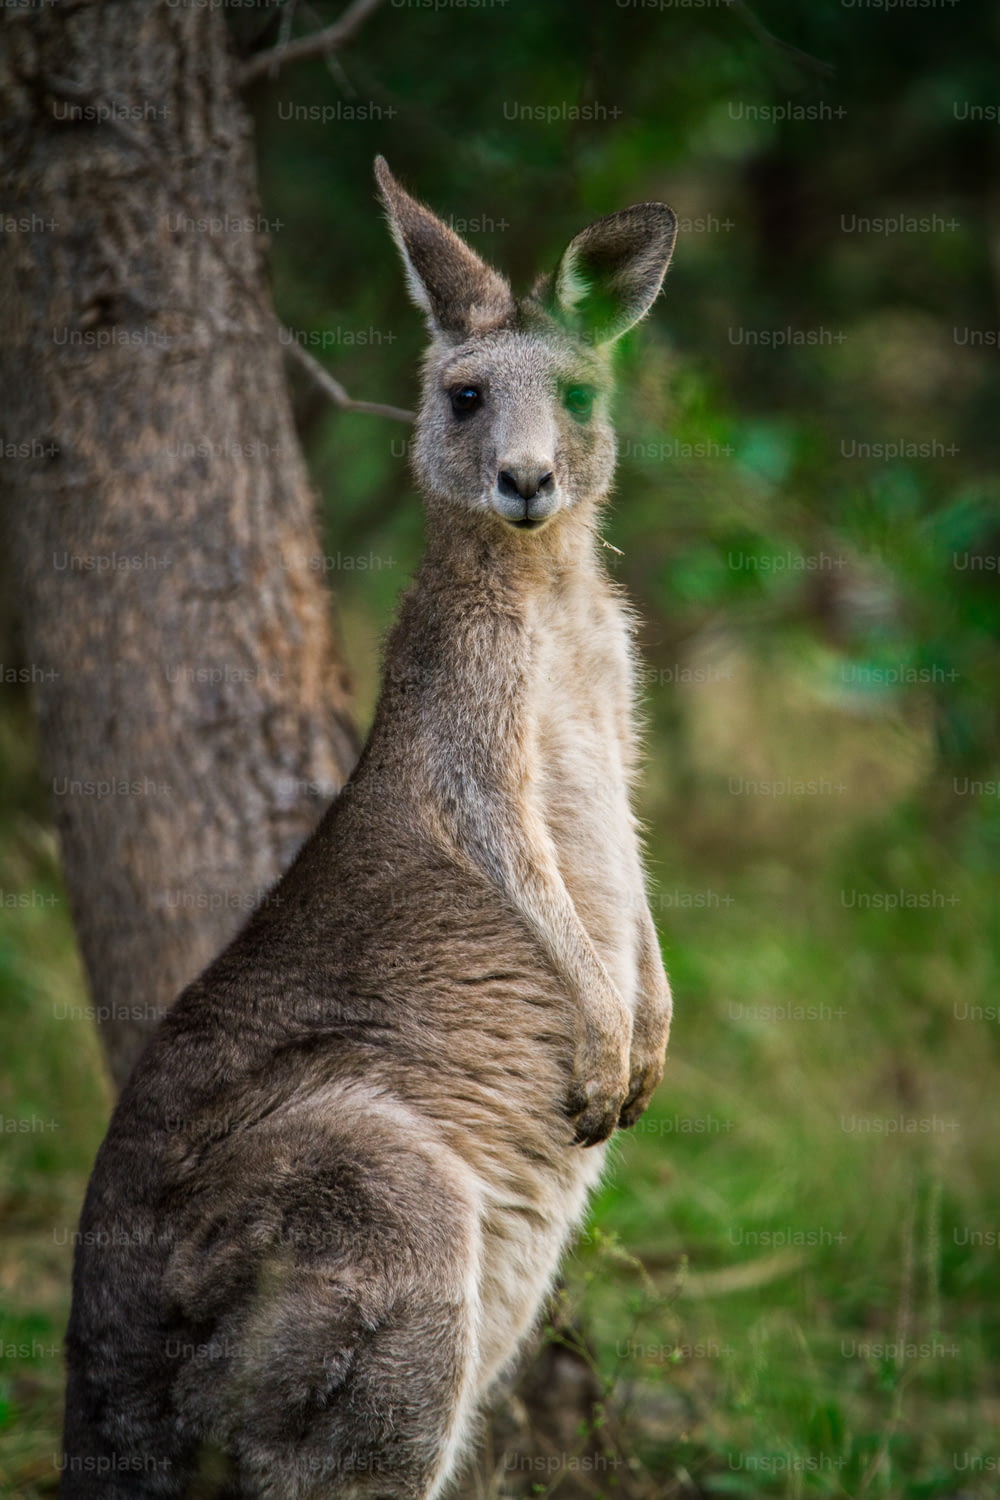 Ein Känguru, das neben einem Baum in einem Wald steht